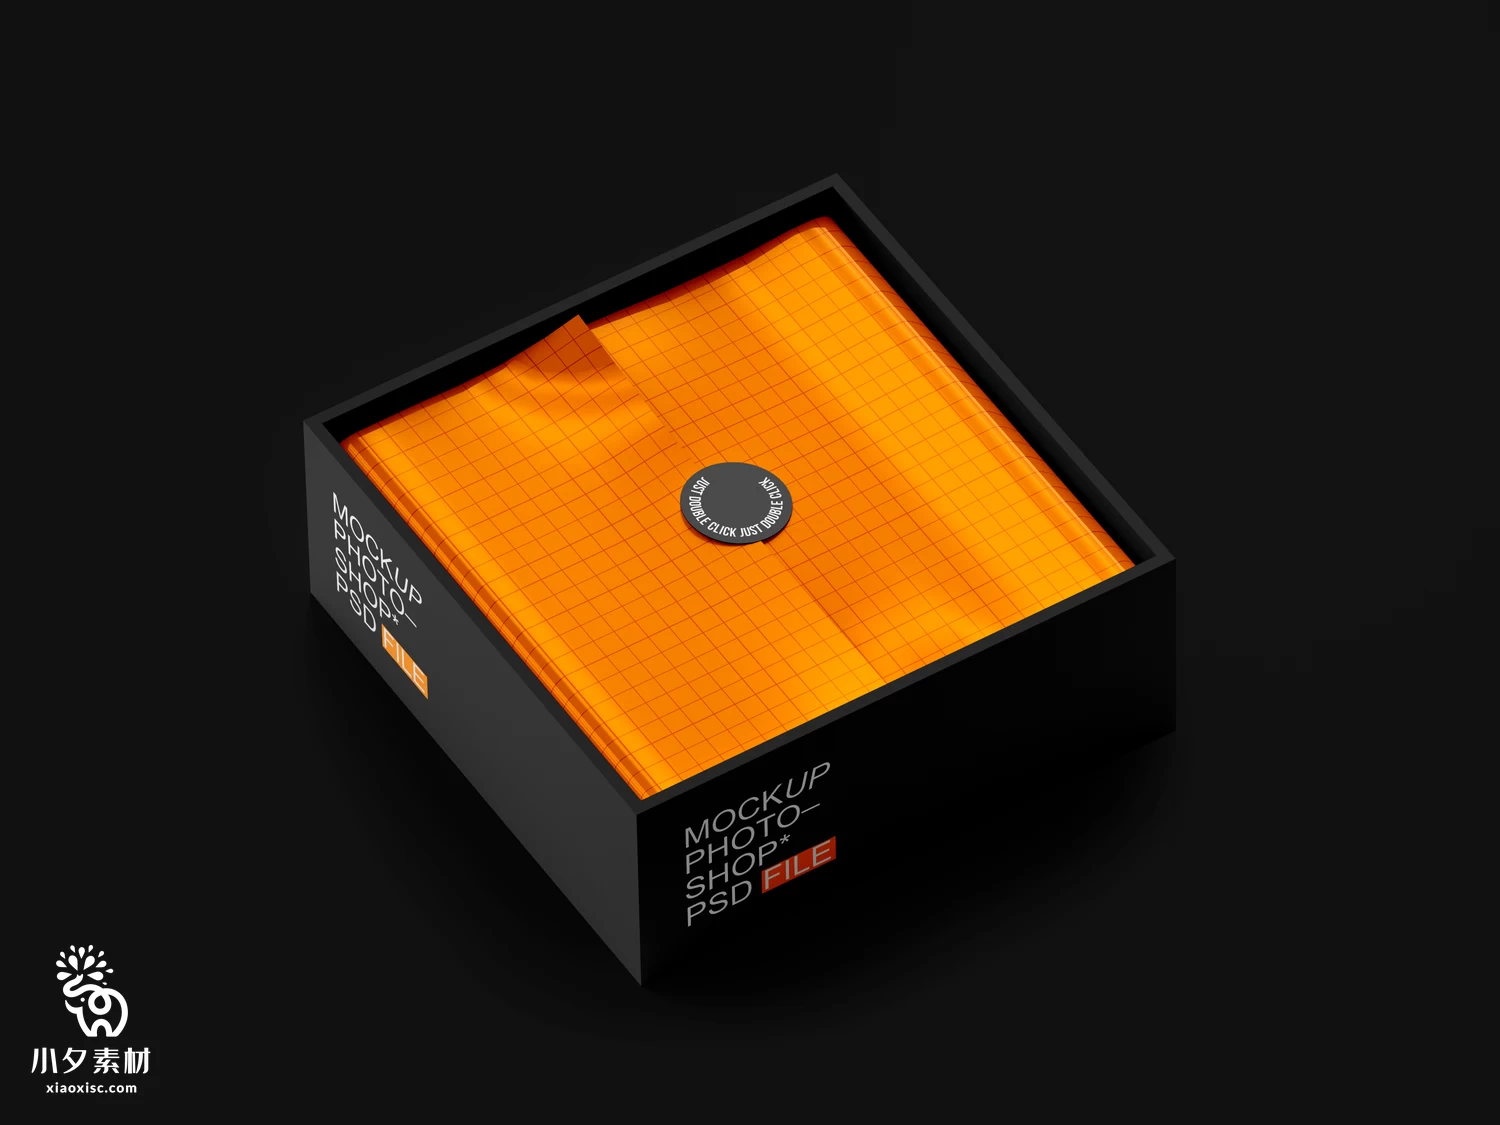 正方形天地盖礼品盒纸盒子VI展示包装智能贴图样机PSD设计素材【001】